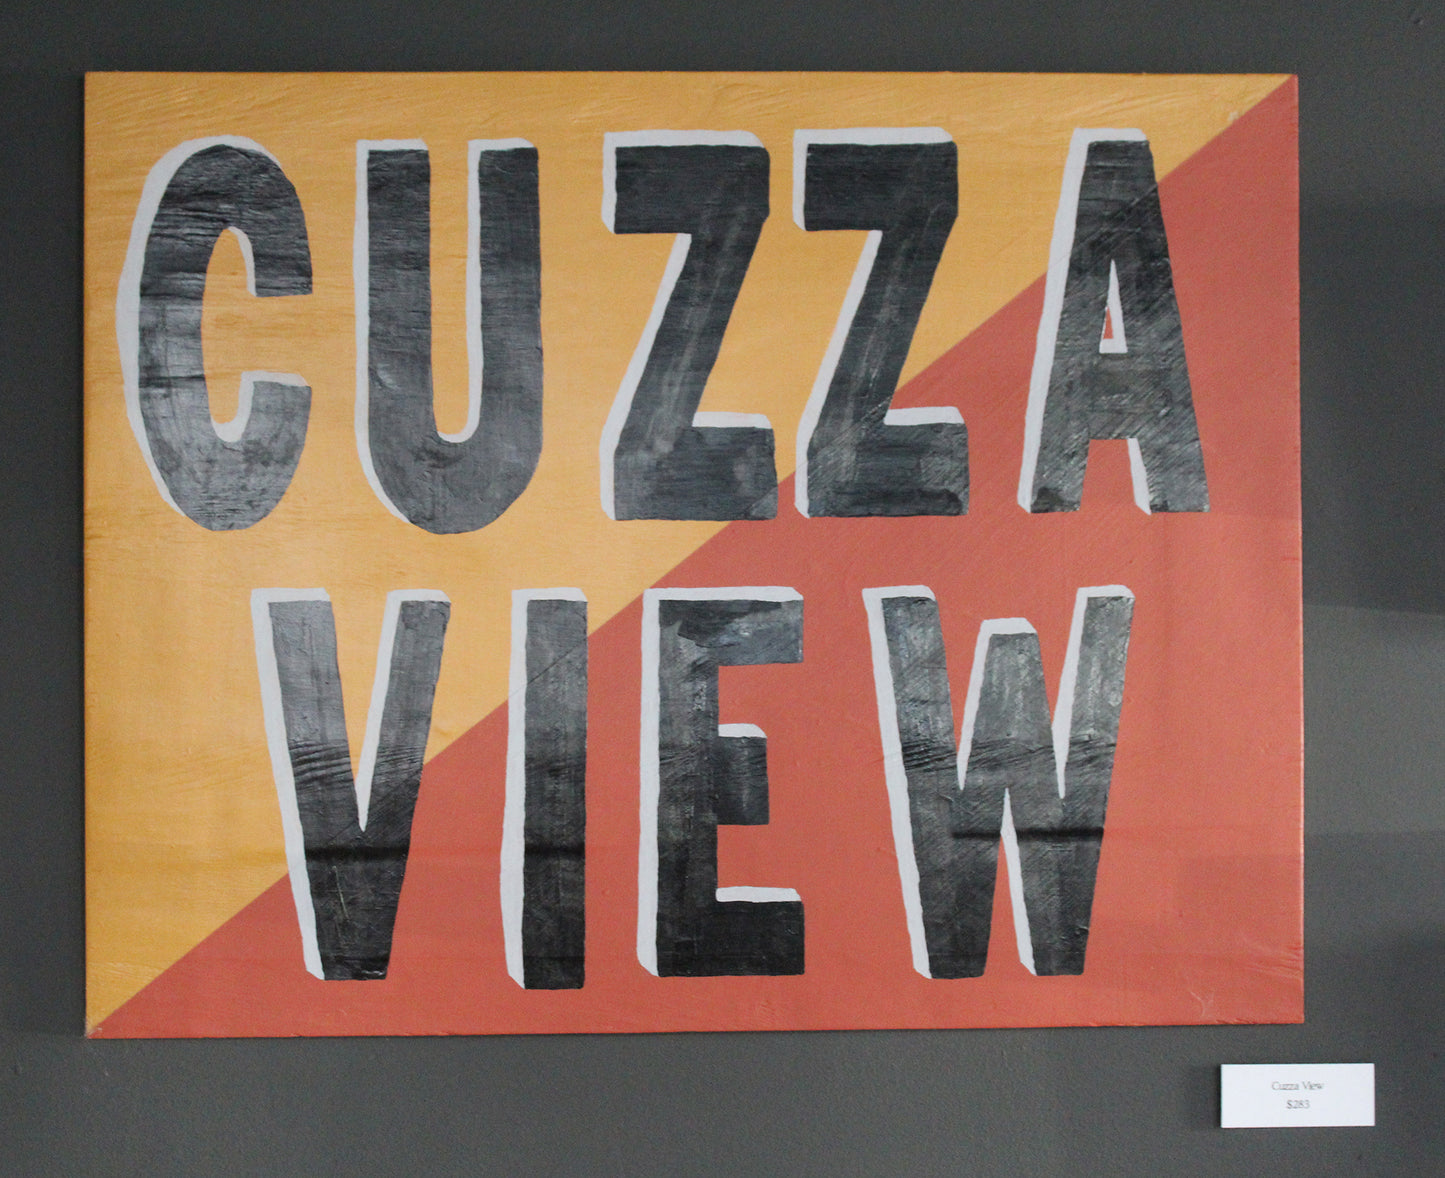 Ezzit Whurr ATM: Cuzza View